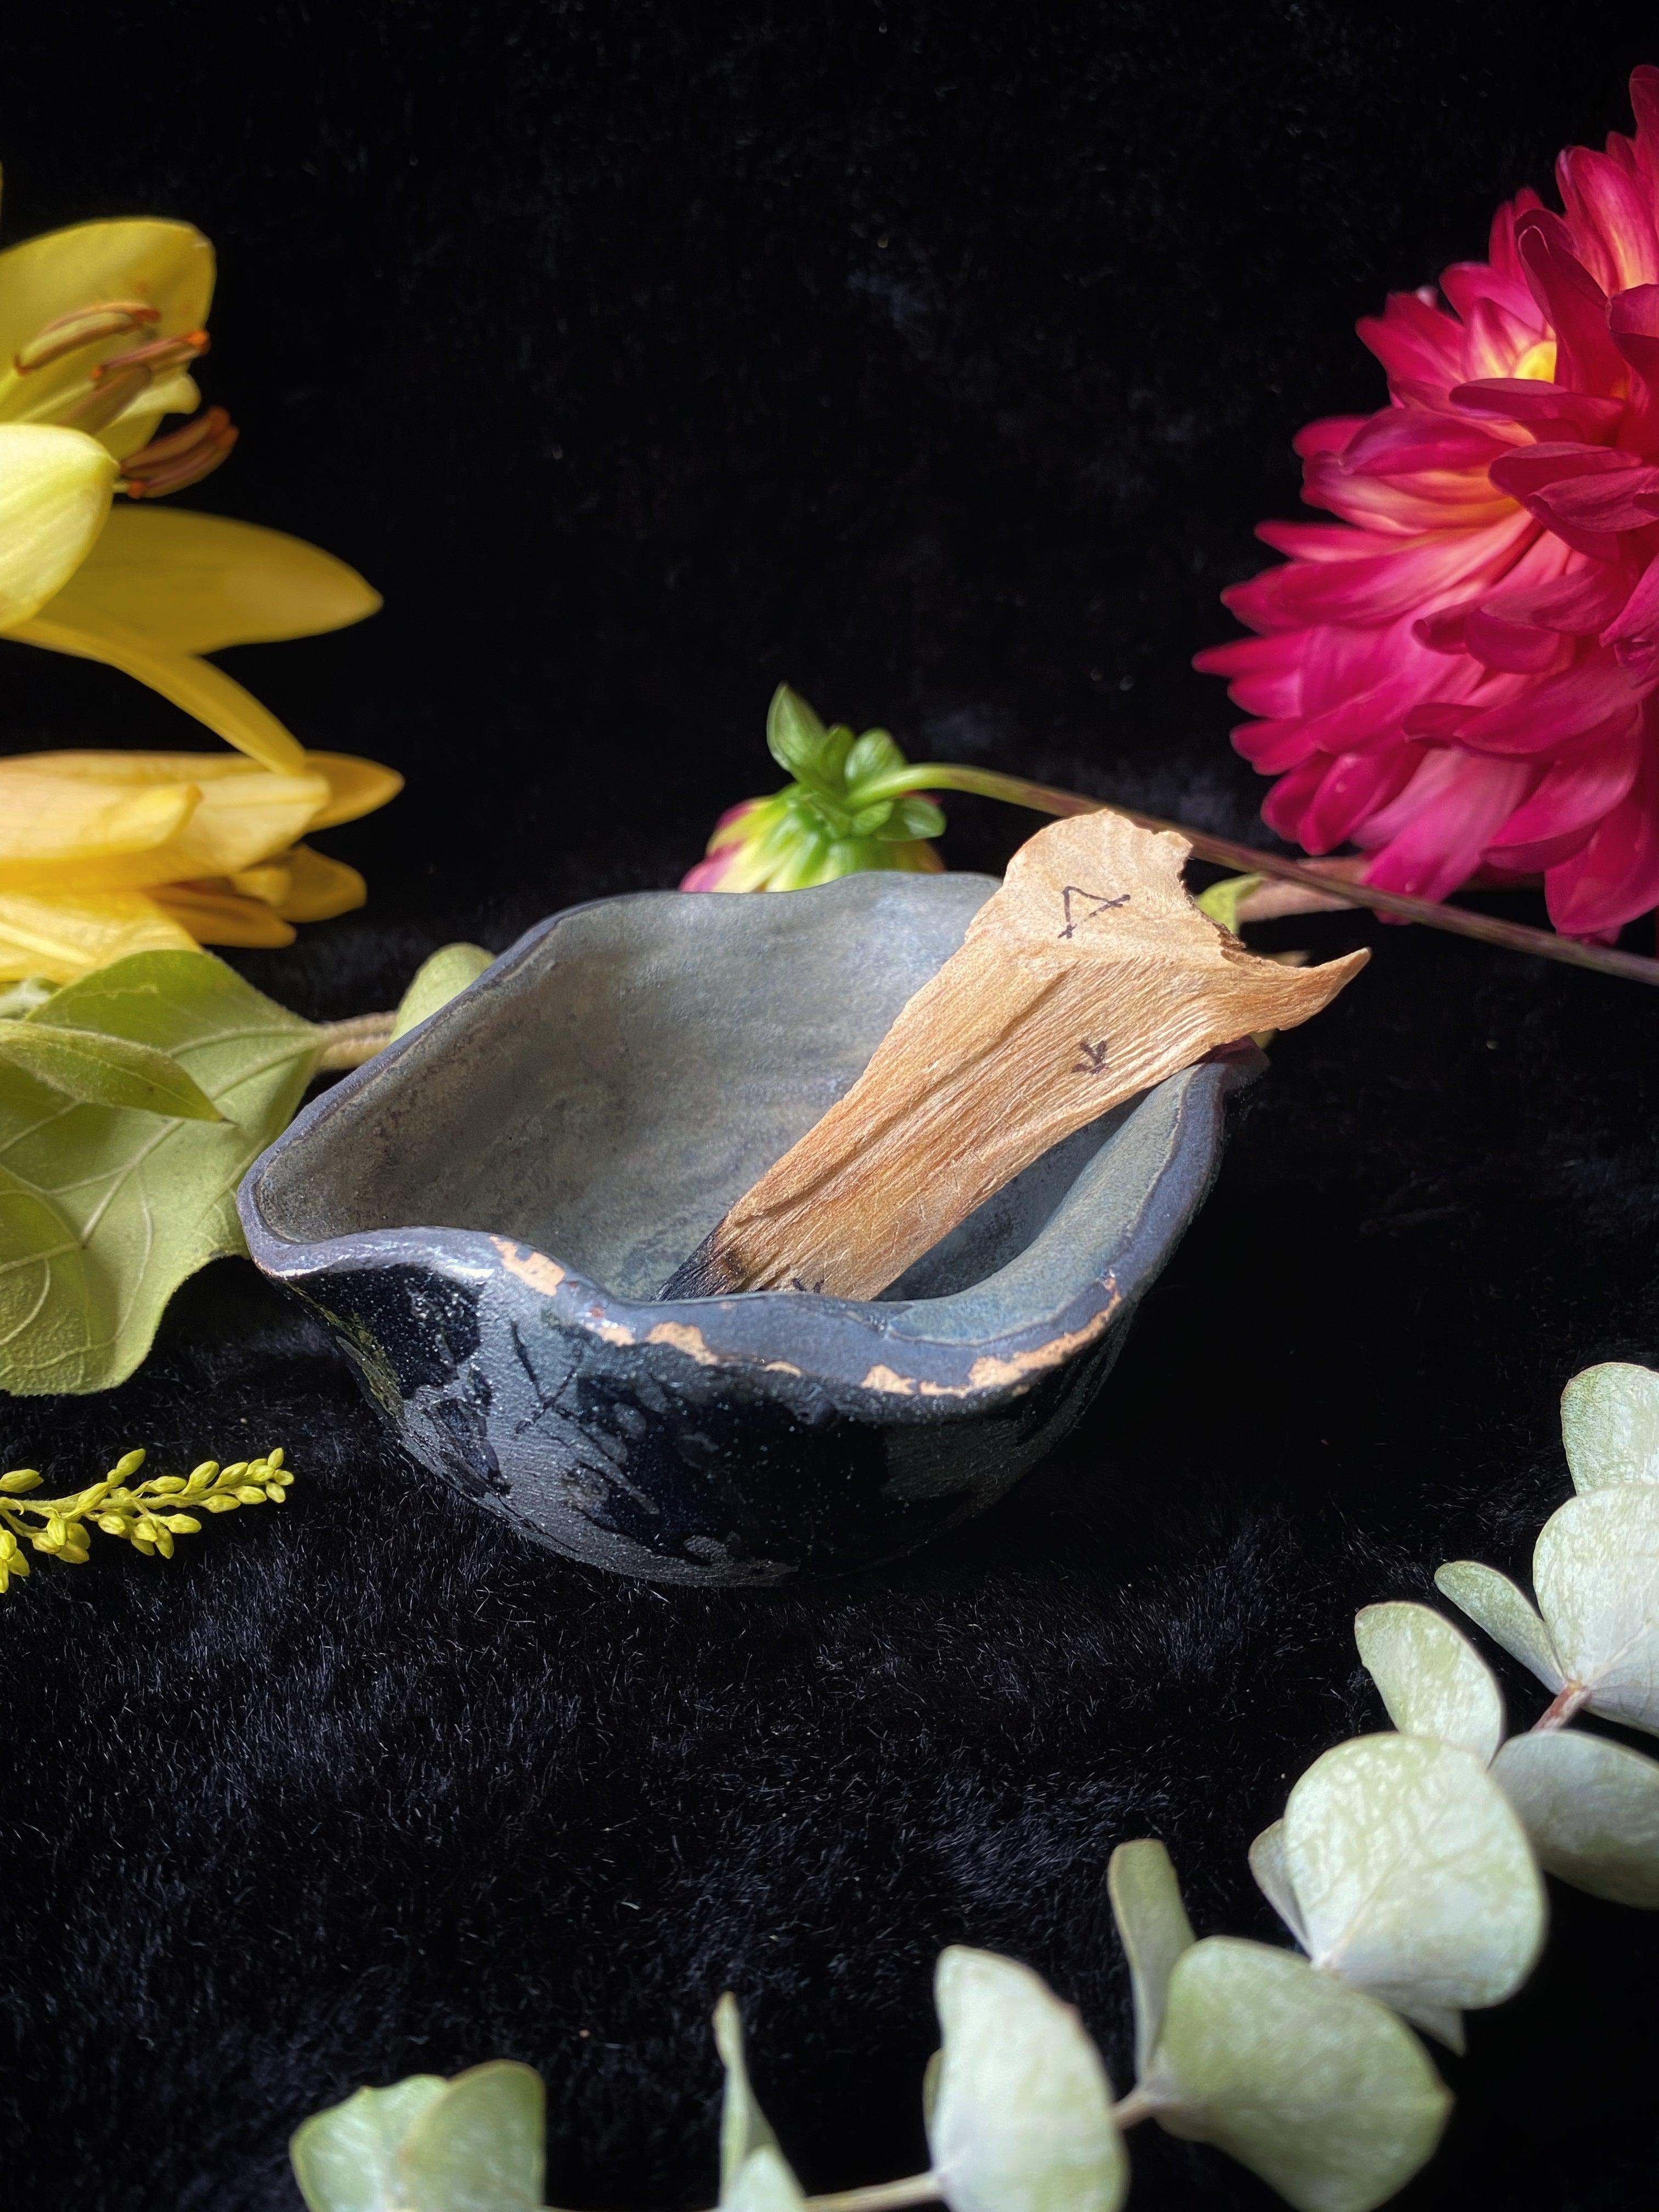 Ceramic Palo Santo or Incense Cone Dishes - Keven Craft Rituals